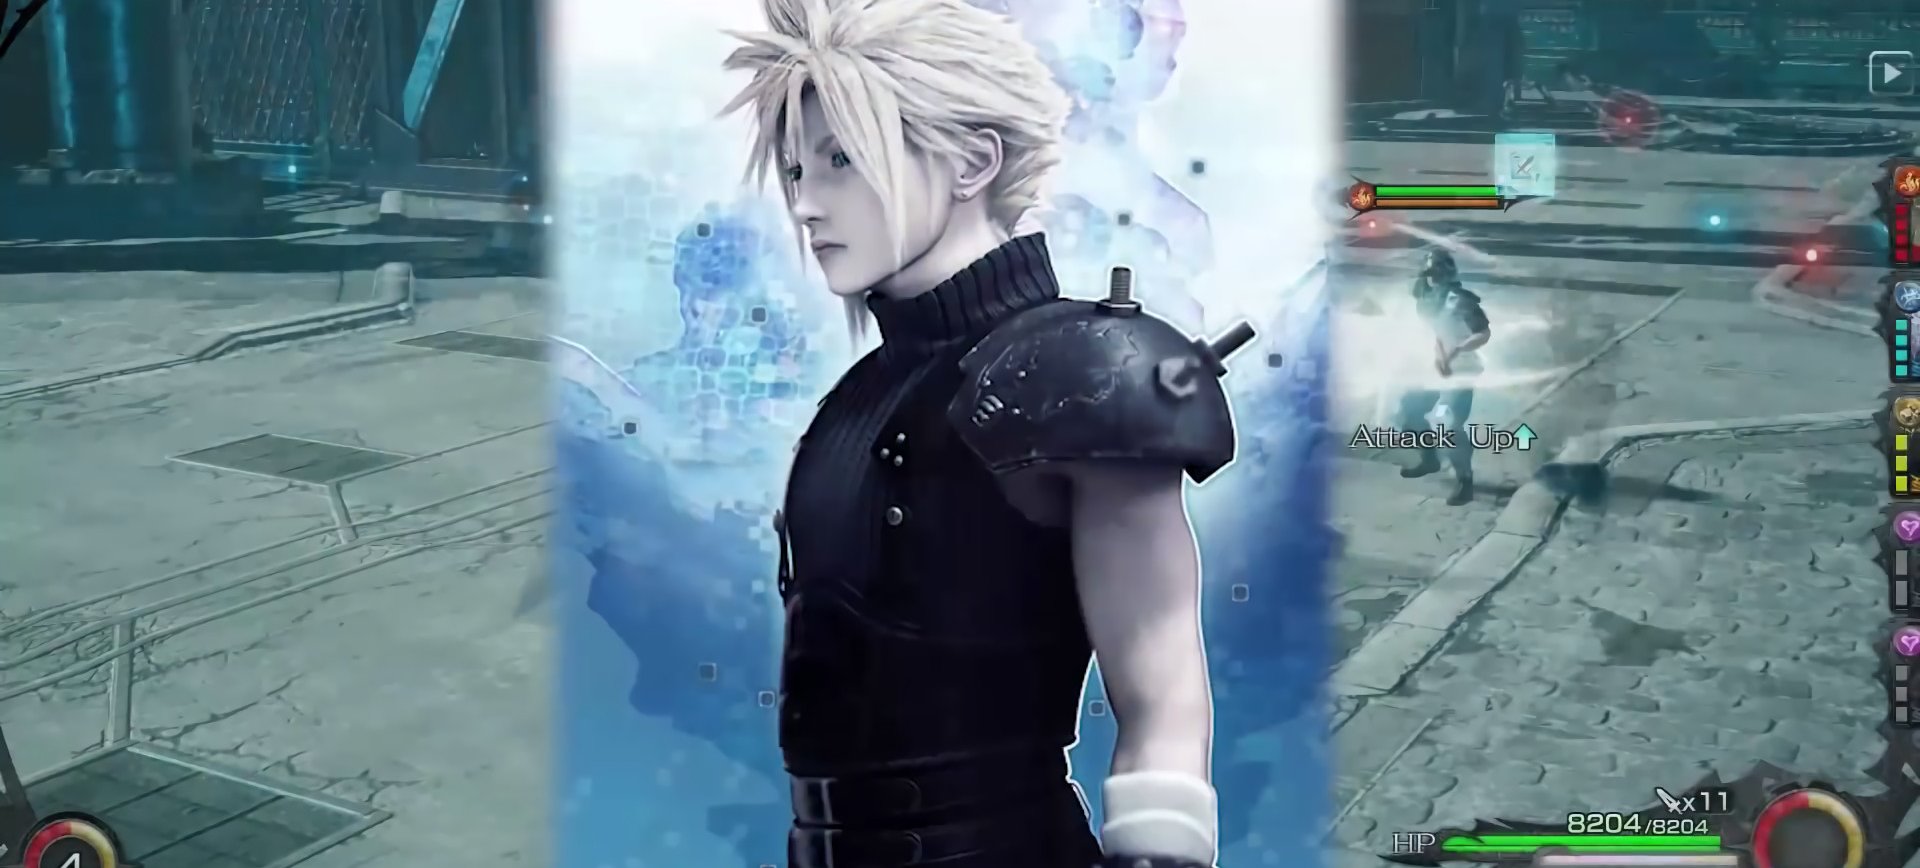 Mobius Final Fantasy đón nhận anh hùng Cloud Strife - Tin Game Mobile